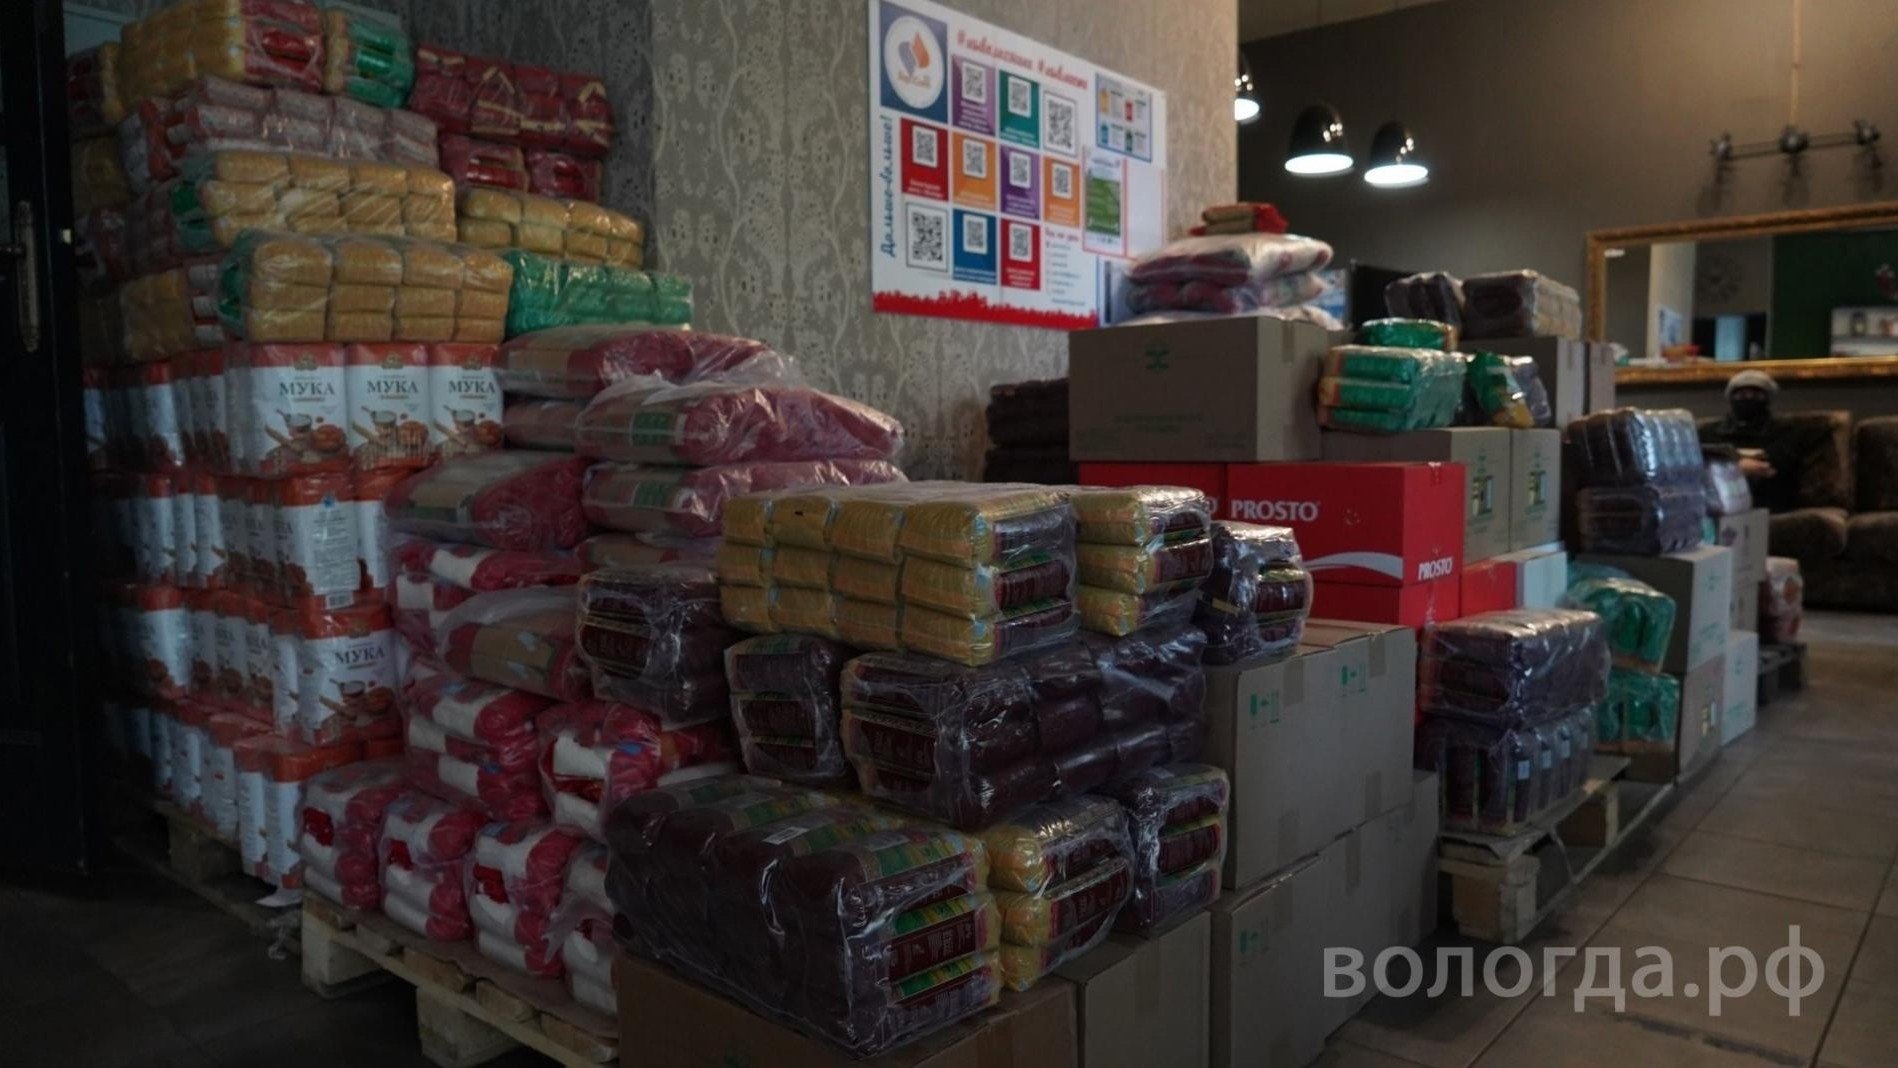 Вологда отправила в зону спецоперации около 300 тонн гуманитарной помощи